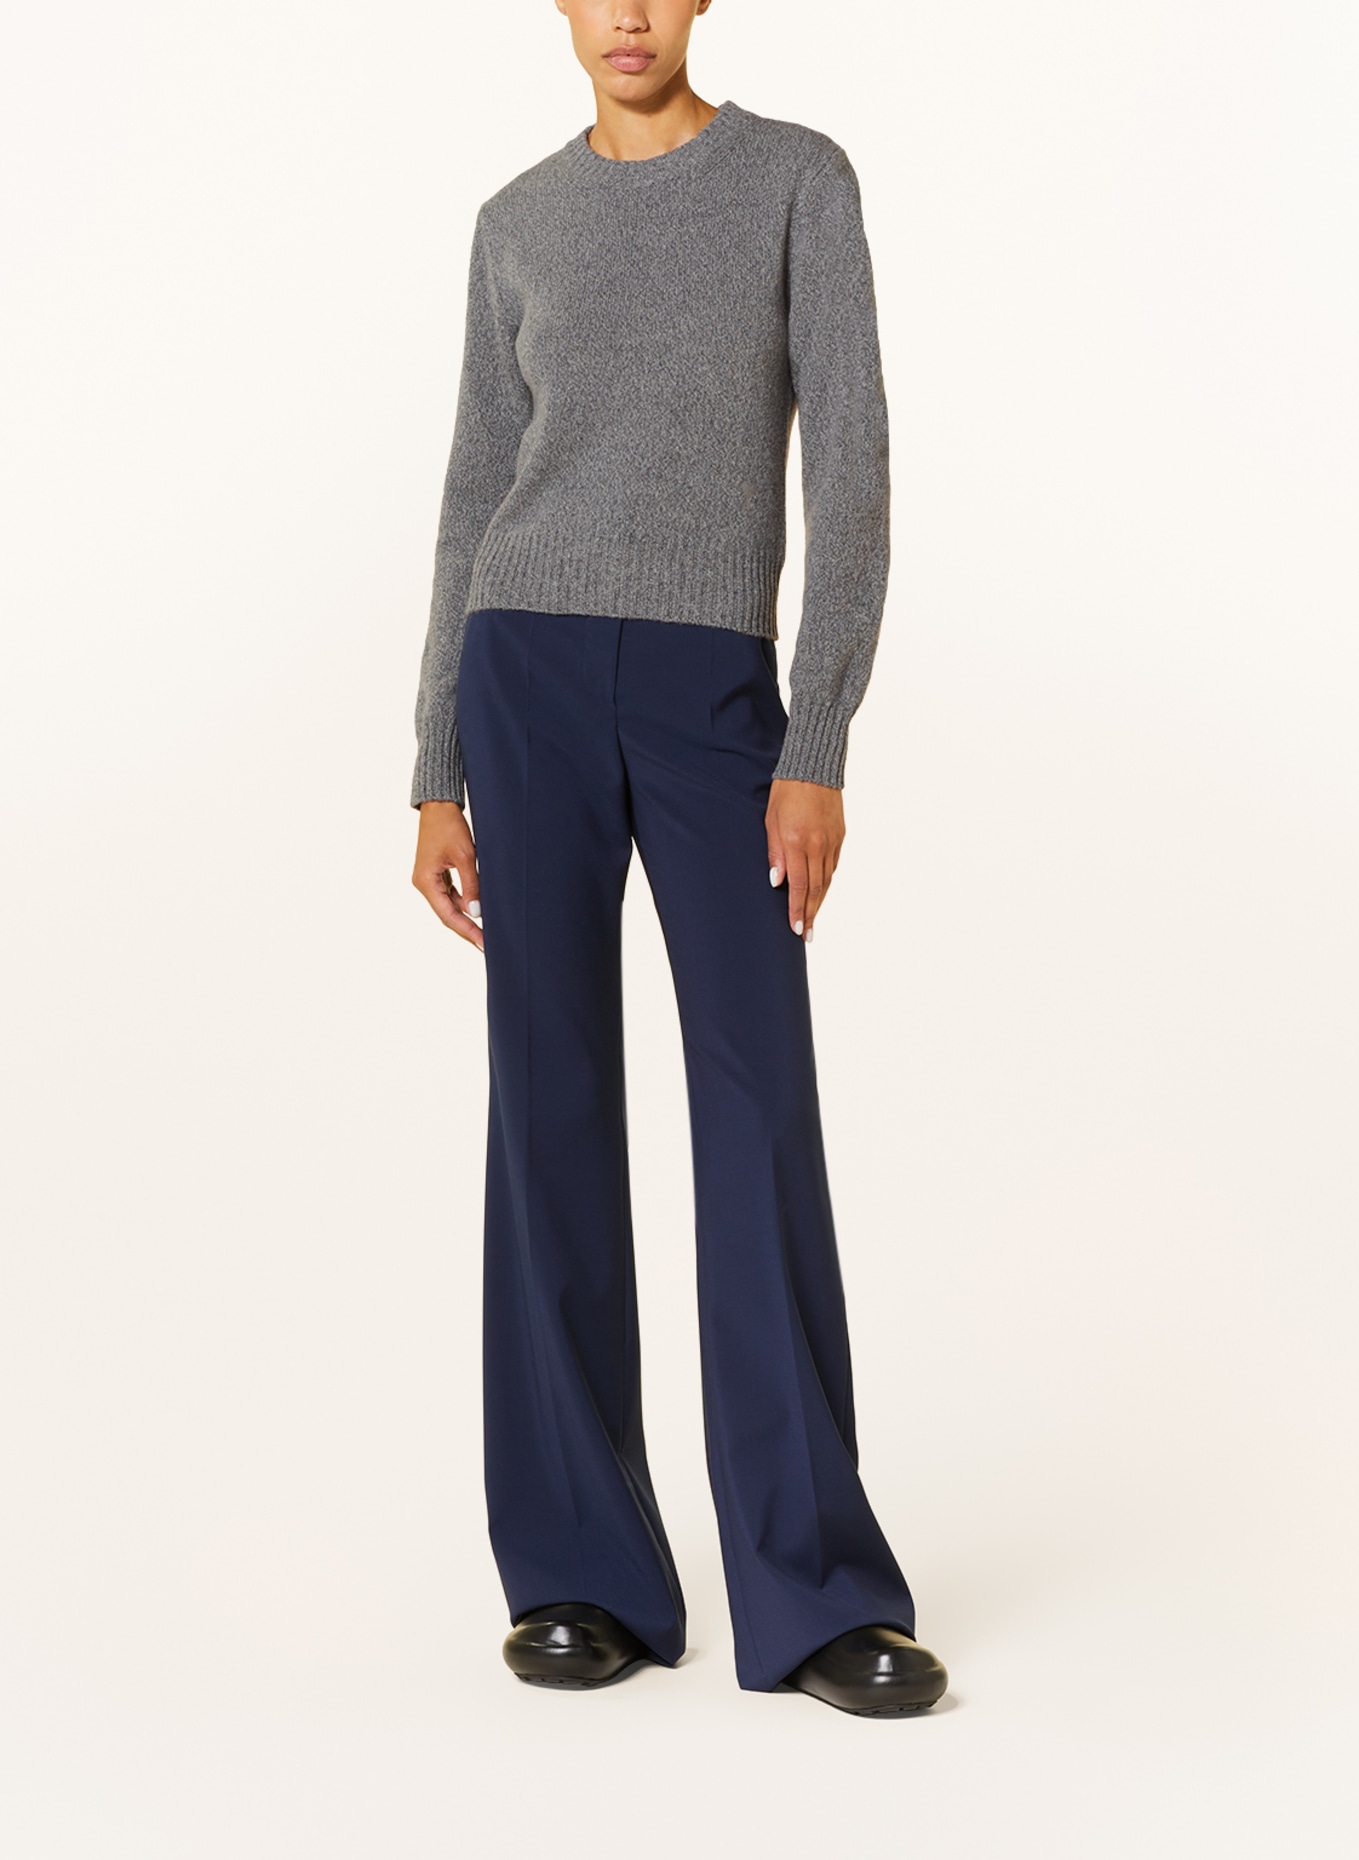 AMI PARIS Cashmere sweater, Color: GRAY (Image 2)